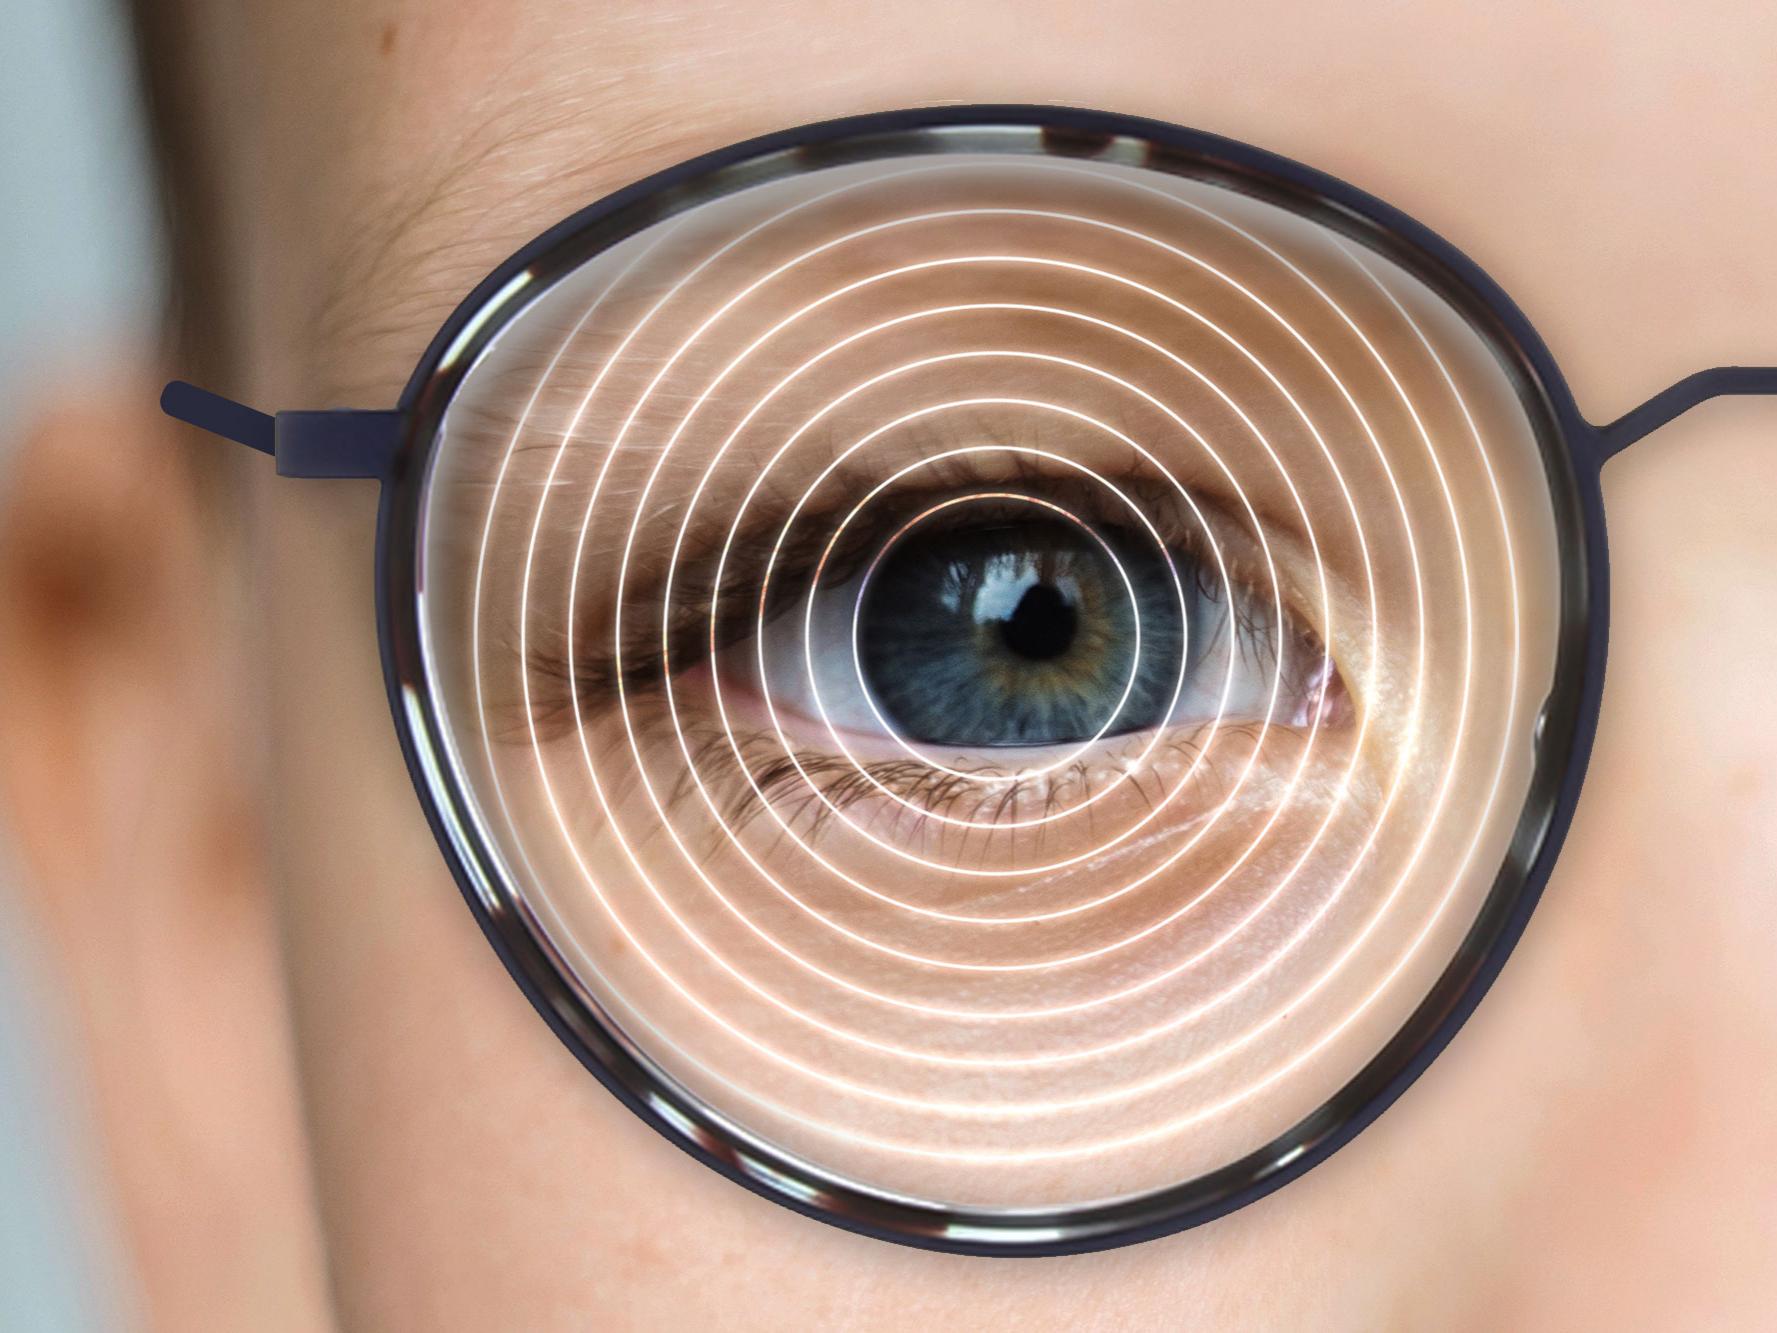 Ilustração da lente ZEISS MyoVision Ace: uma zona central pequena mas suficiente suporta a visão à distância, enquanto as extremidades controlam a progressão da miopia.